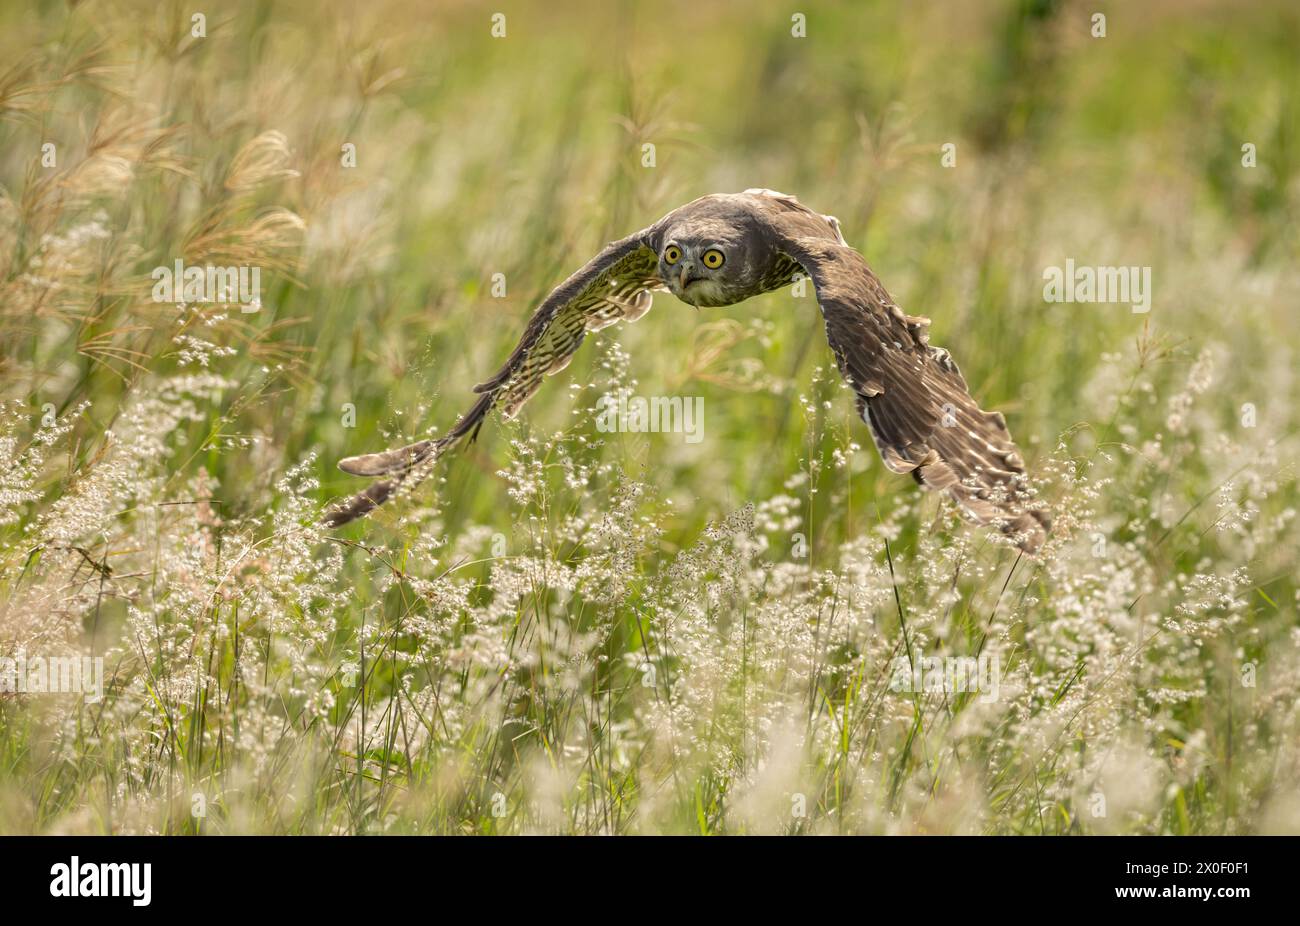 Belling Owl (Ninox connivens), die über eine Graswiese fliegt und ihre durchdringenden gelben Augen zeigt, ausgewählte Fokussierung. Stockfoto